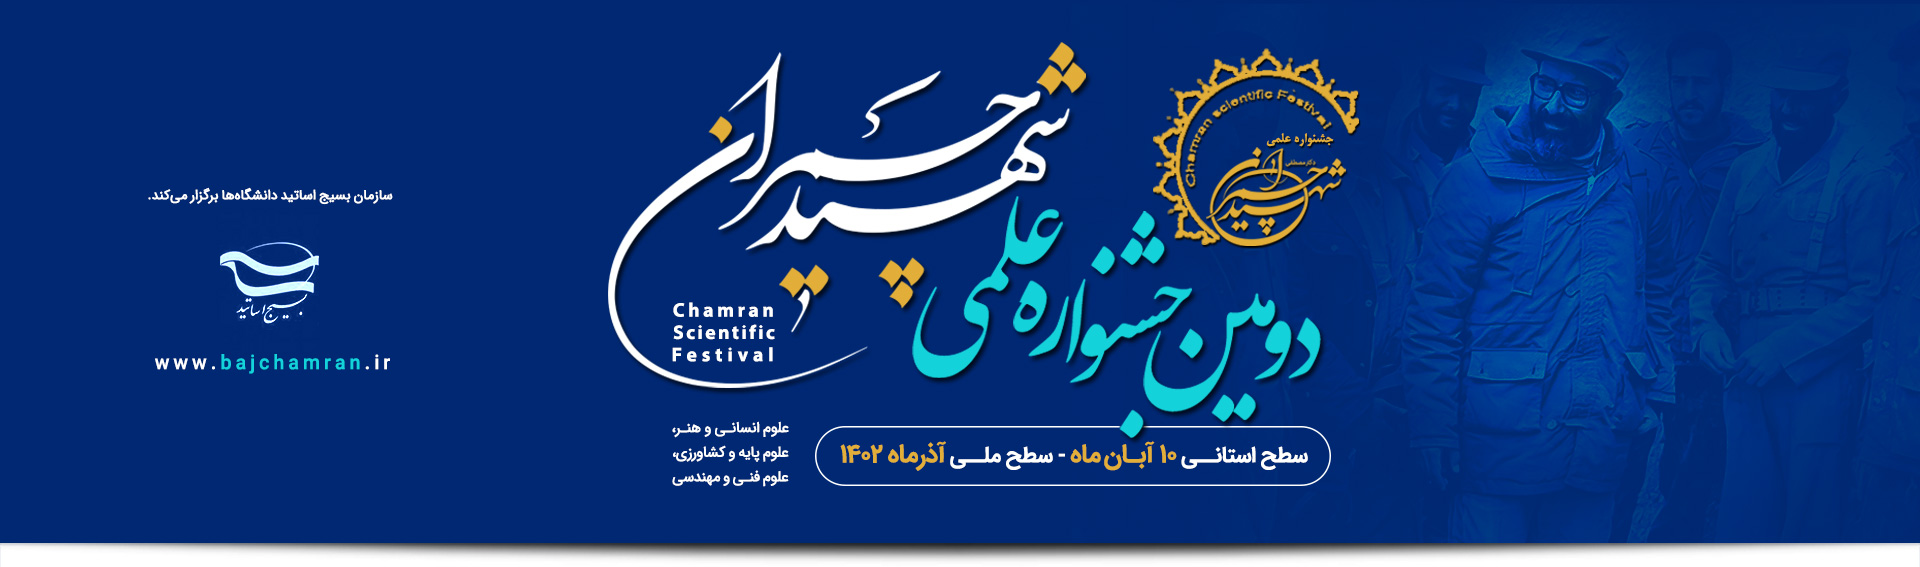 ارسال بیش از ۴ هزار اثر علمی به جشنواره شهید چمران